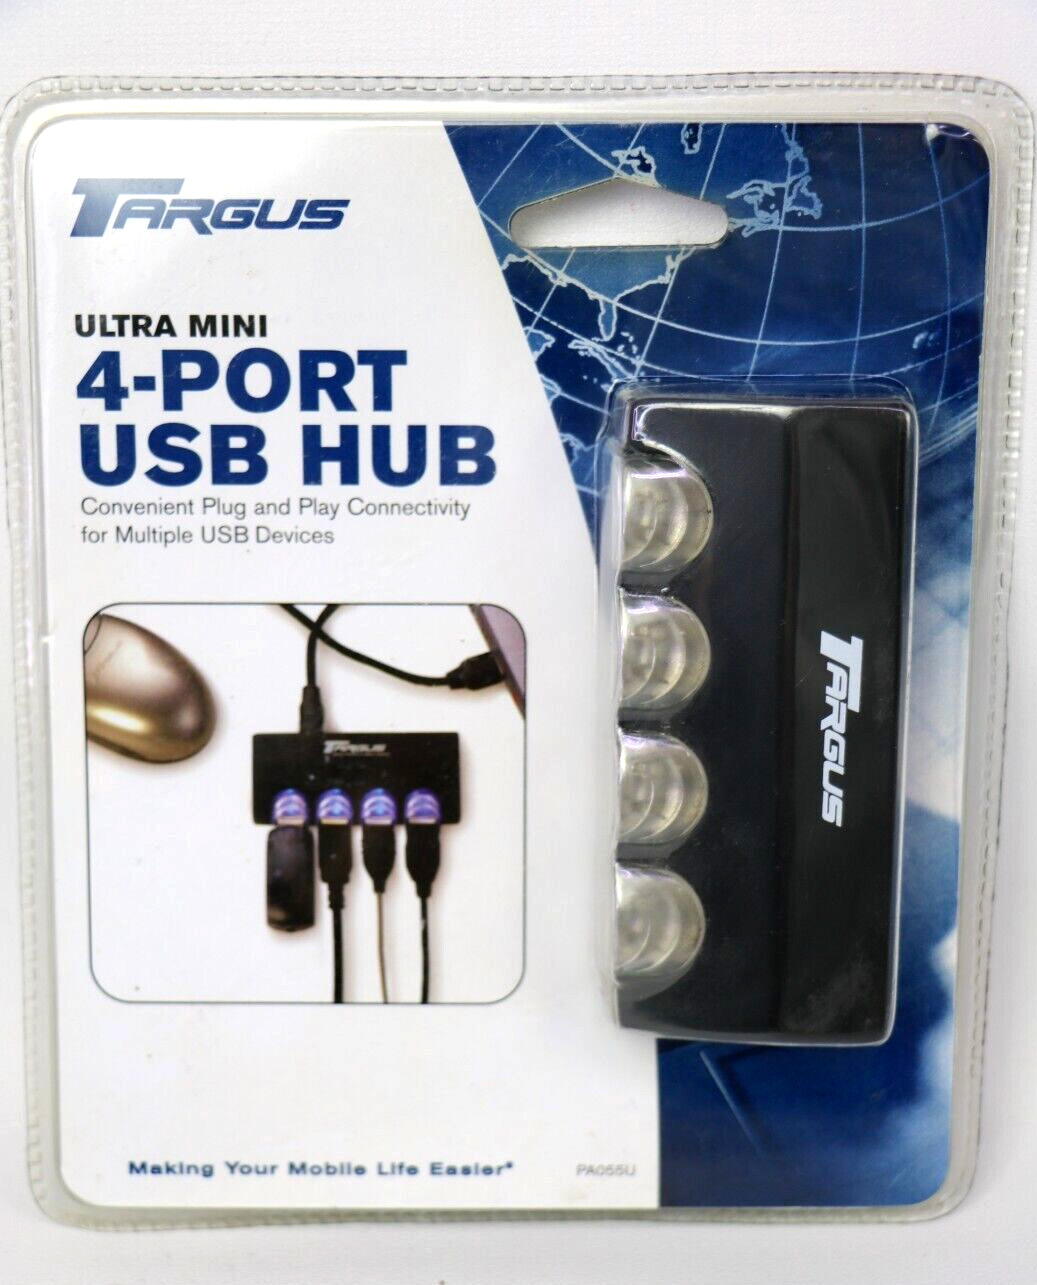 New TARGUS USB 4-Port Hub, Ultra Mini, 2.0, Model PA055U in Box